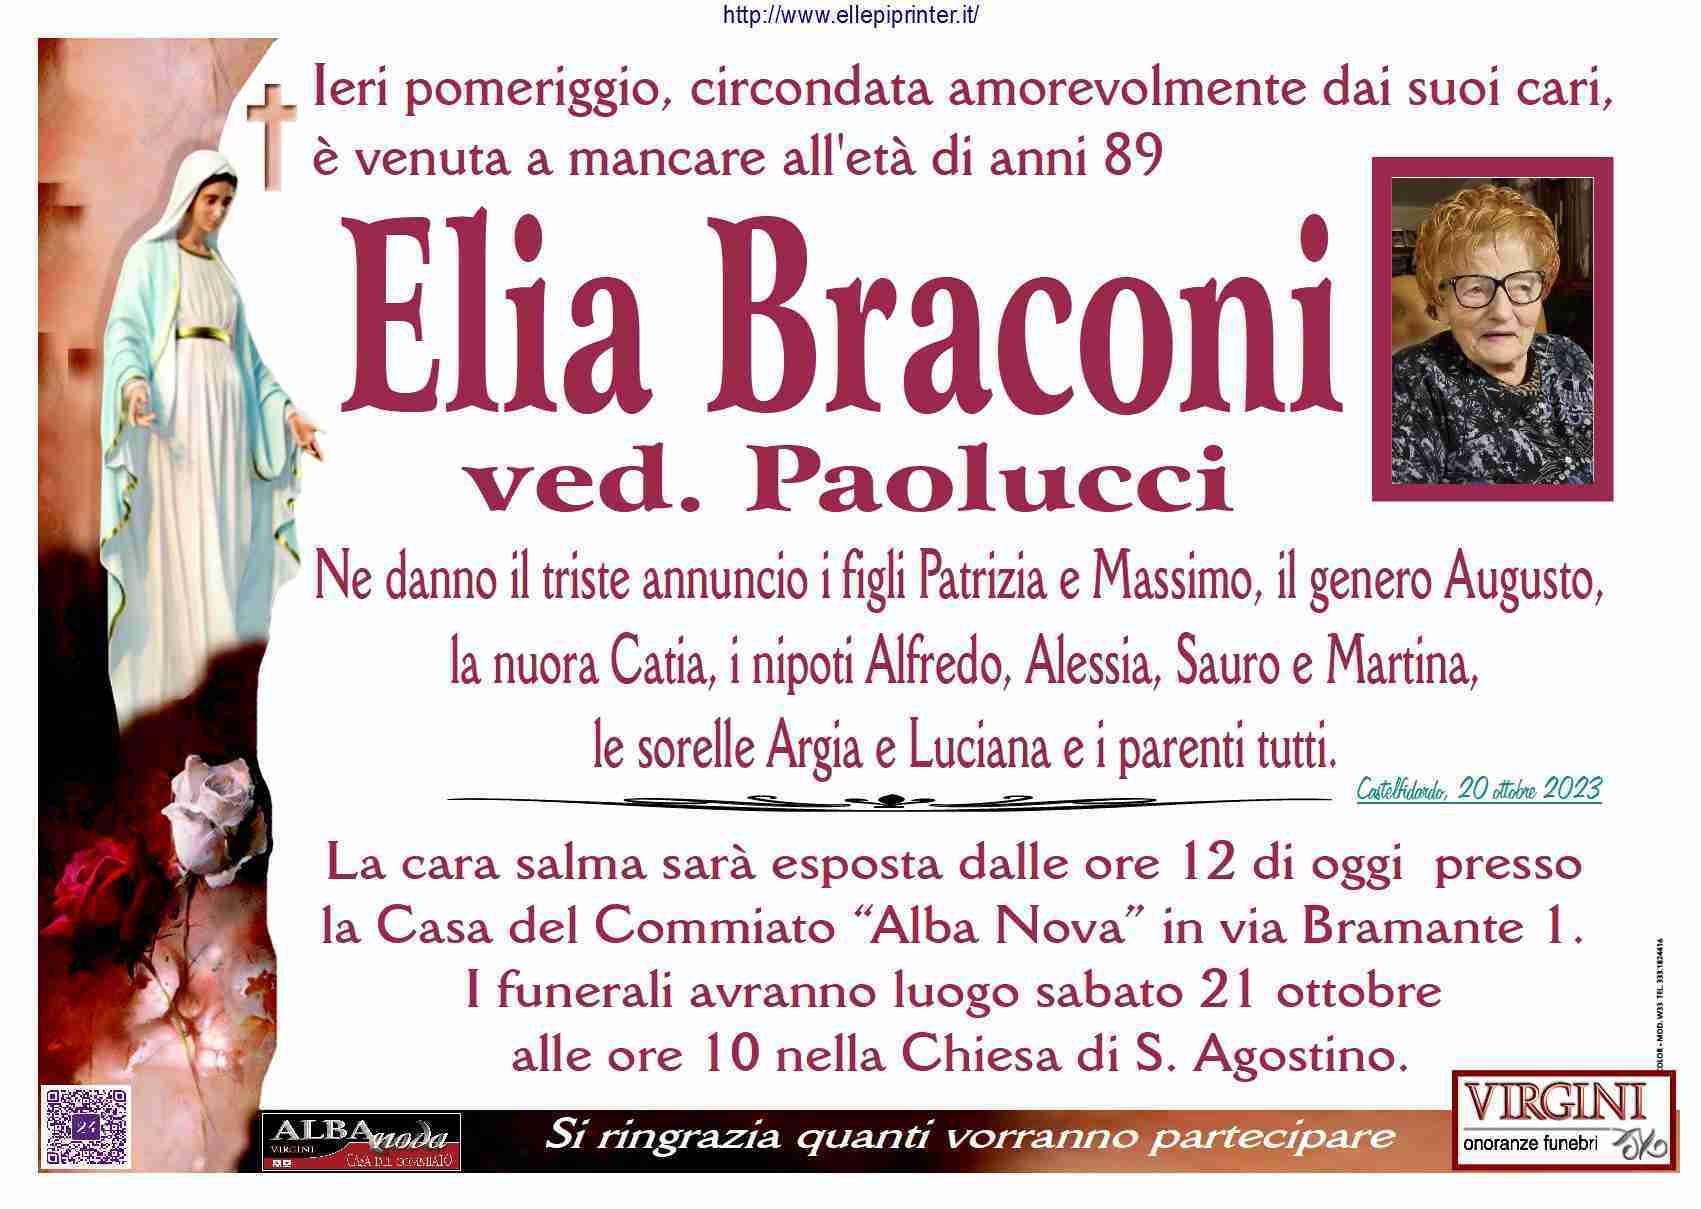 Elia Braconi